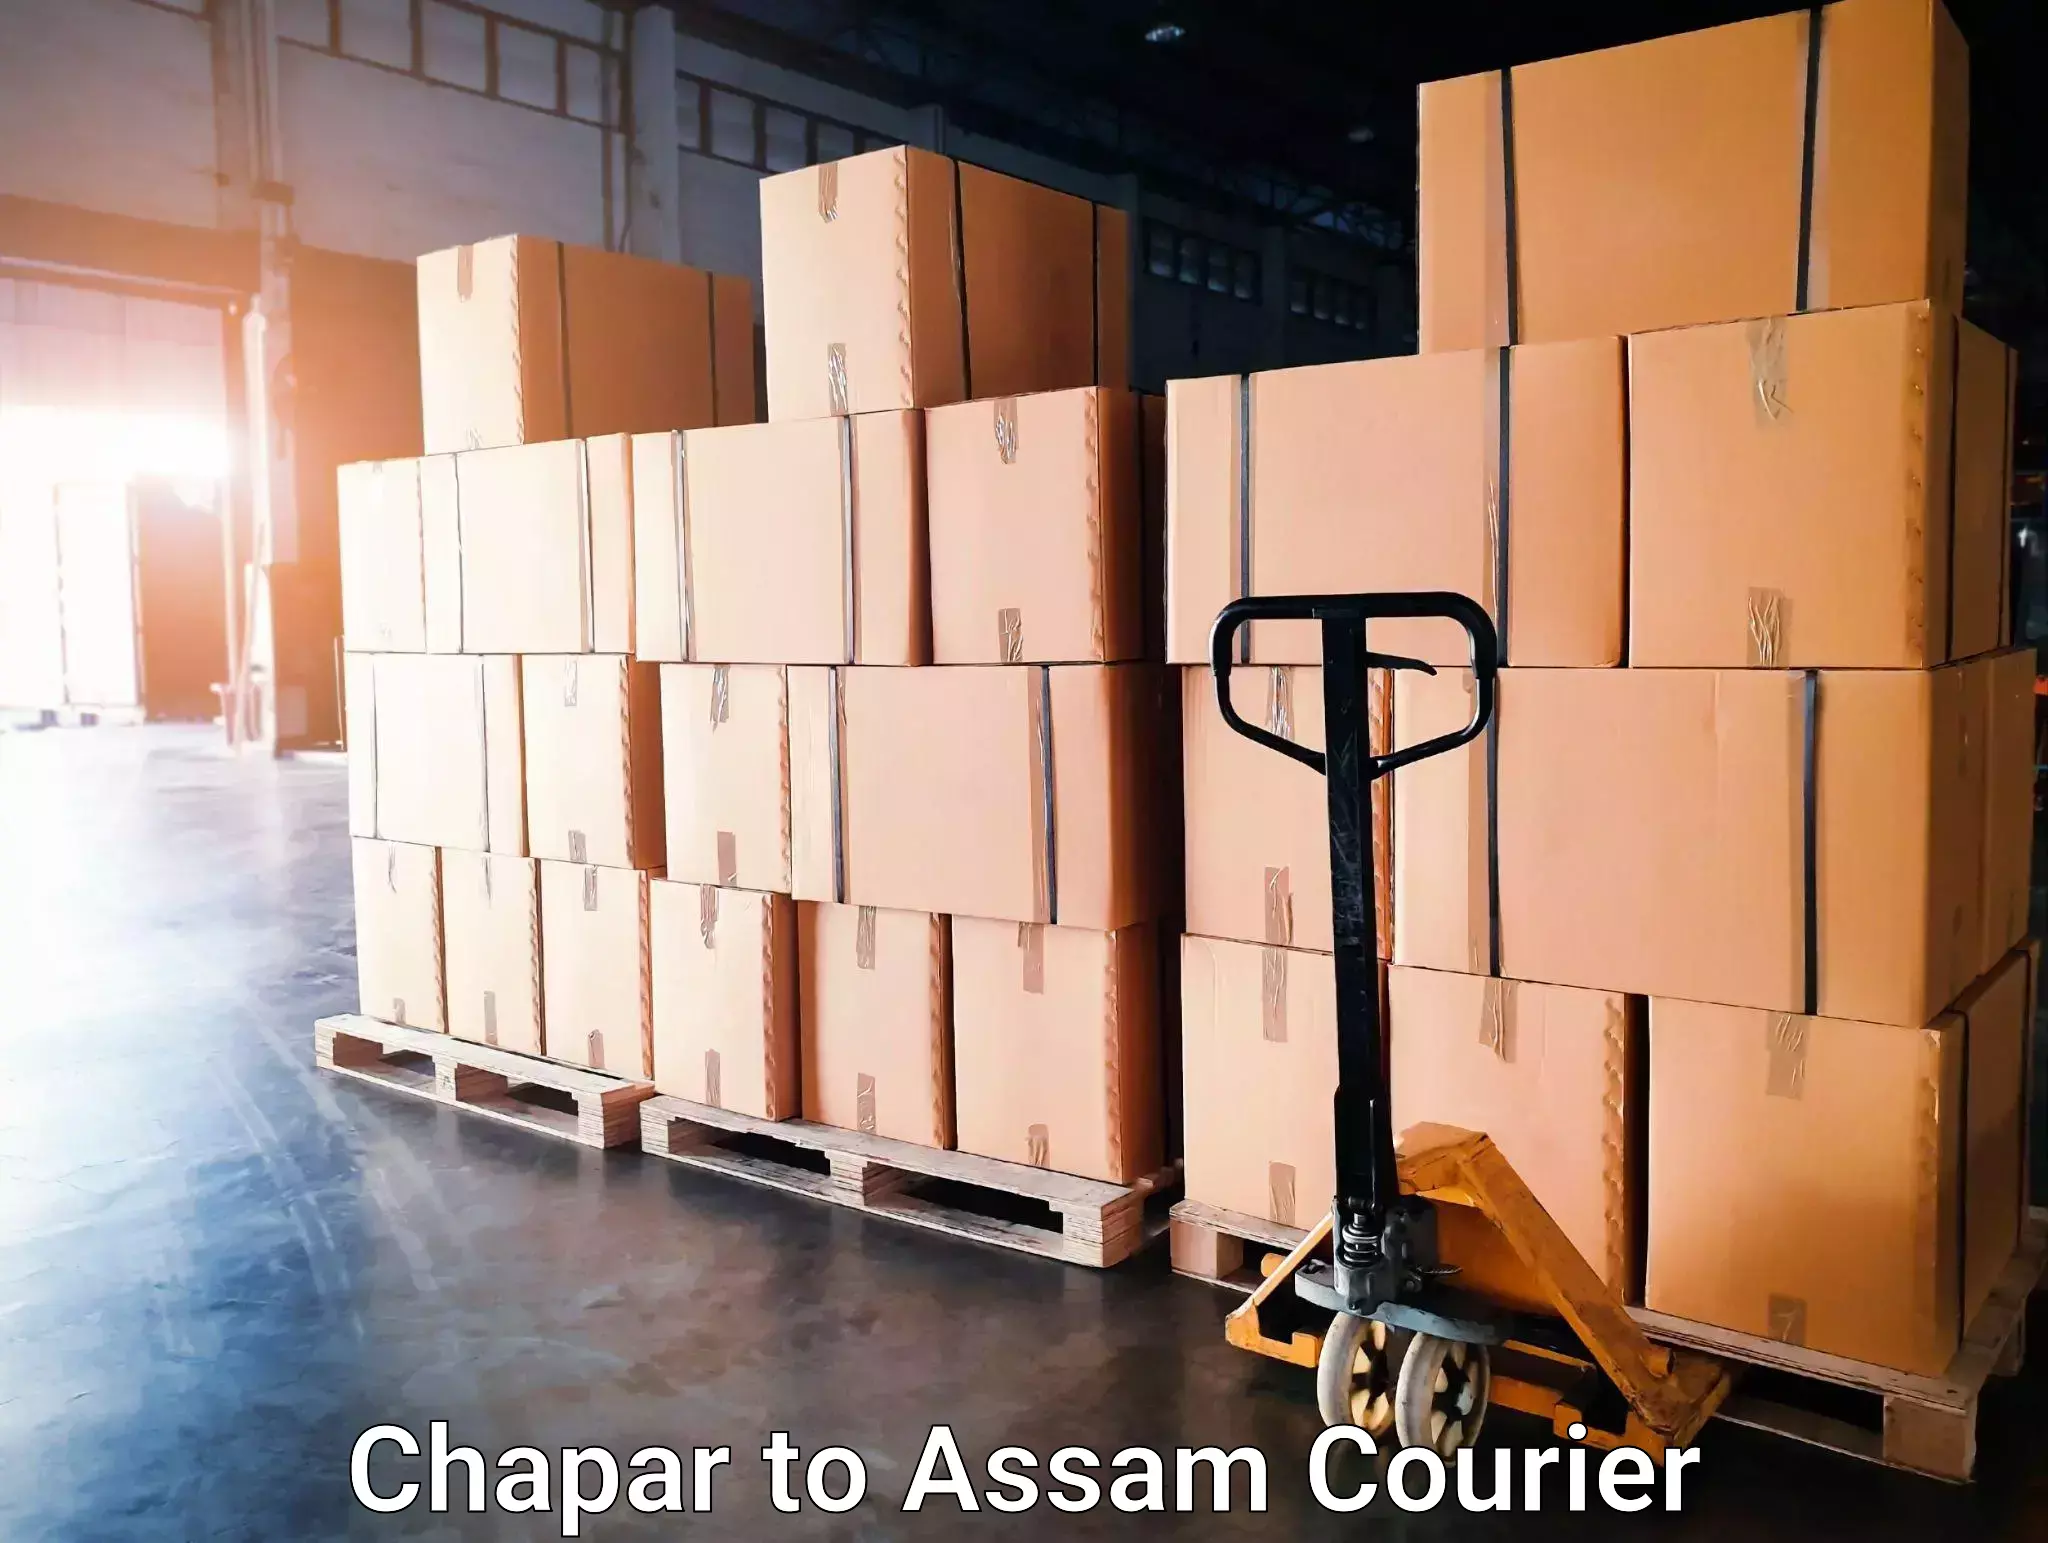 International parcel service Chapar to Assam